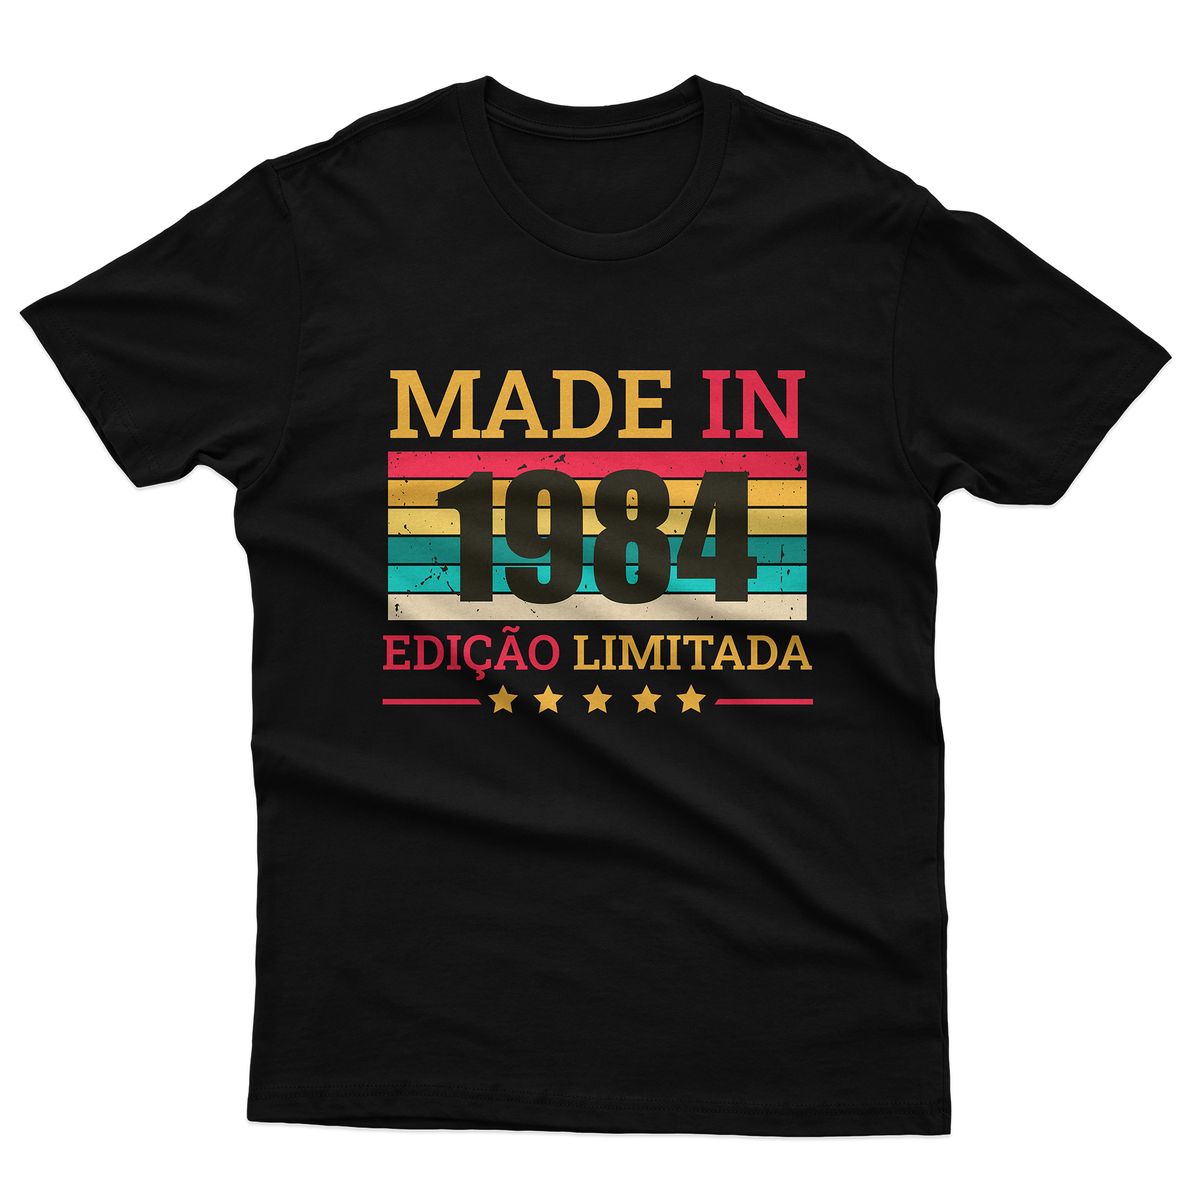 Nome do produto: Camiseta Made in 1984